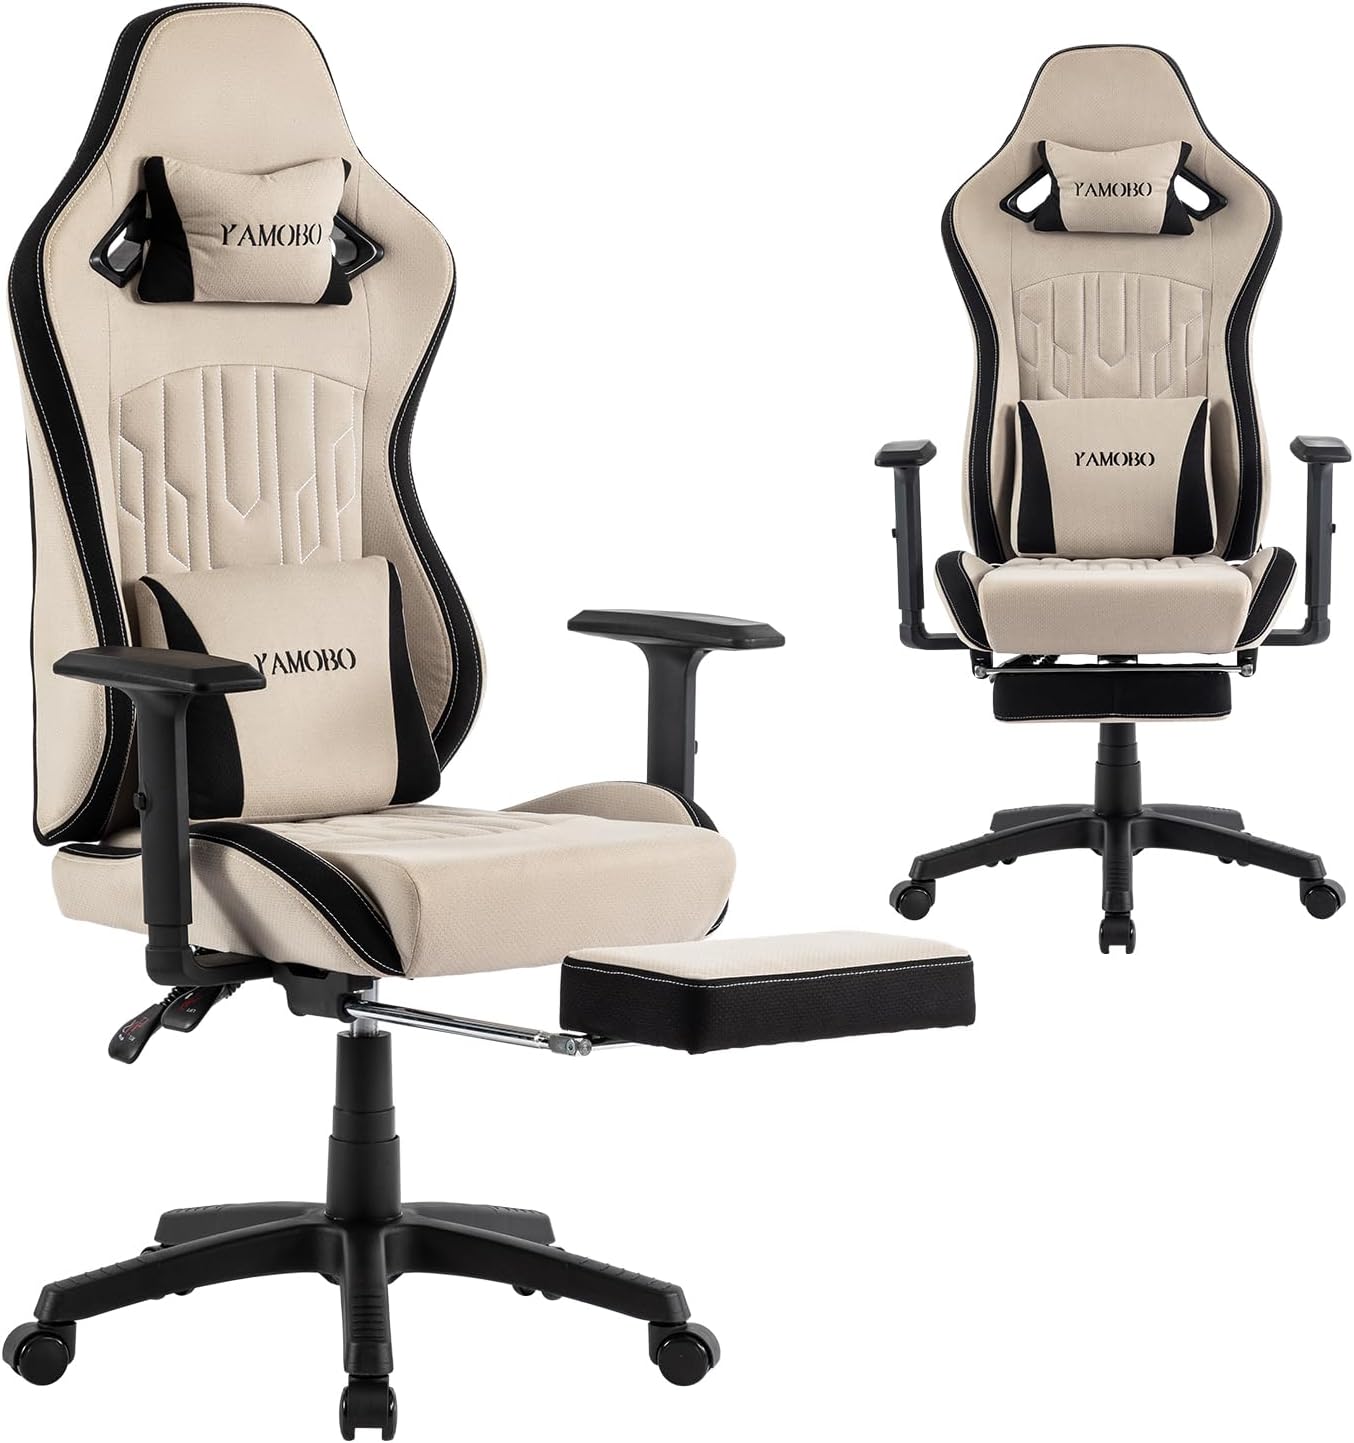 Silla de juegos con reposapiés, silla ergonómica de alta calidad, muebles  para el hogar, oficina, ordenador